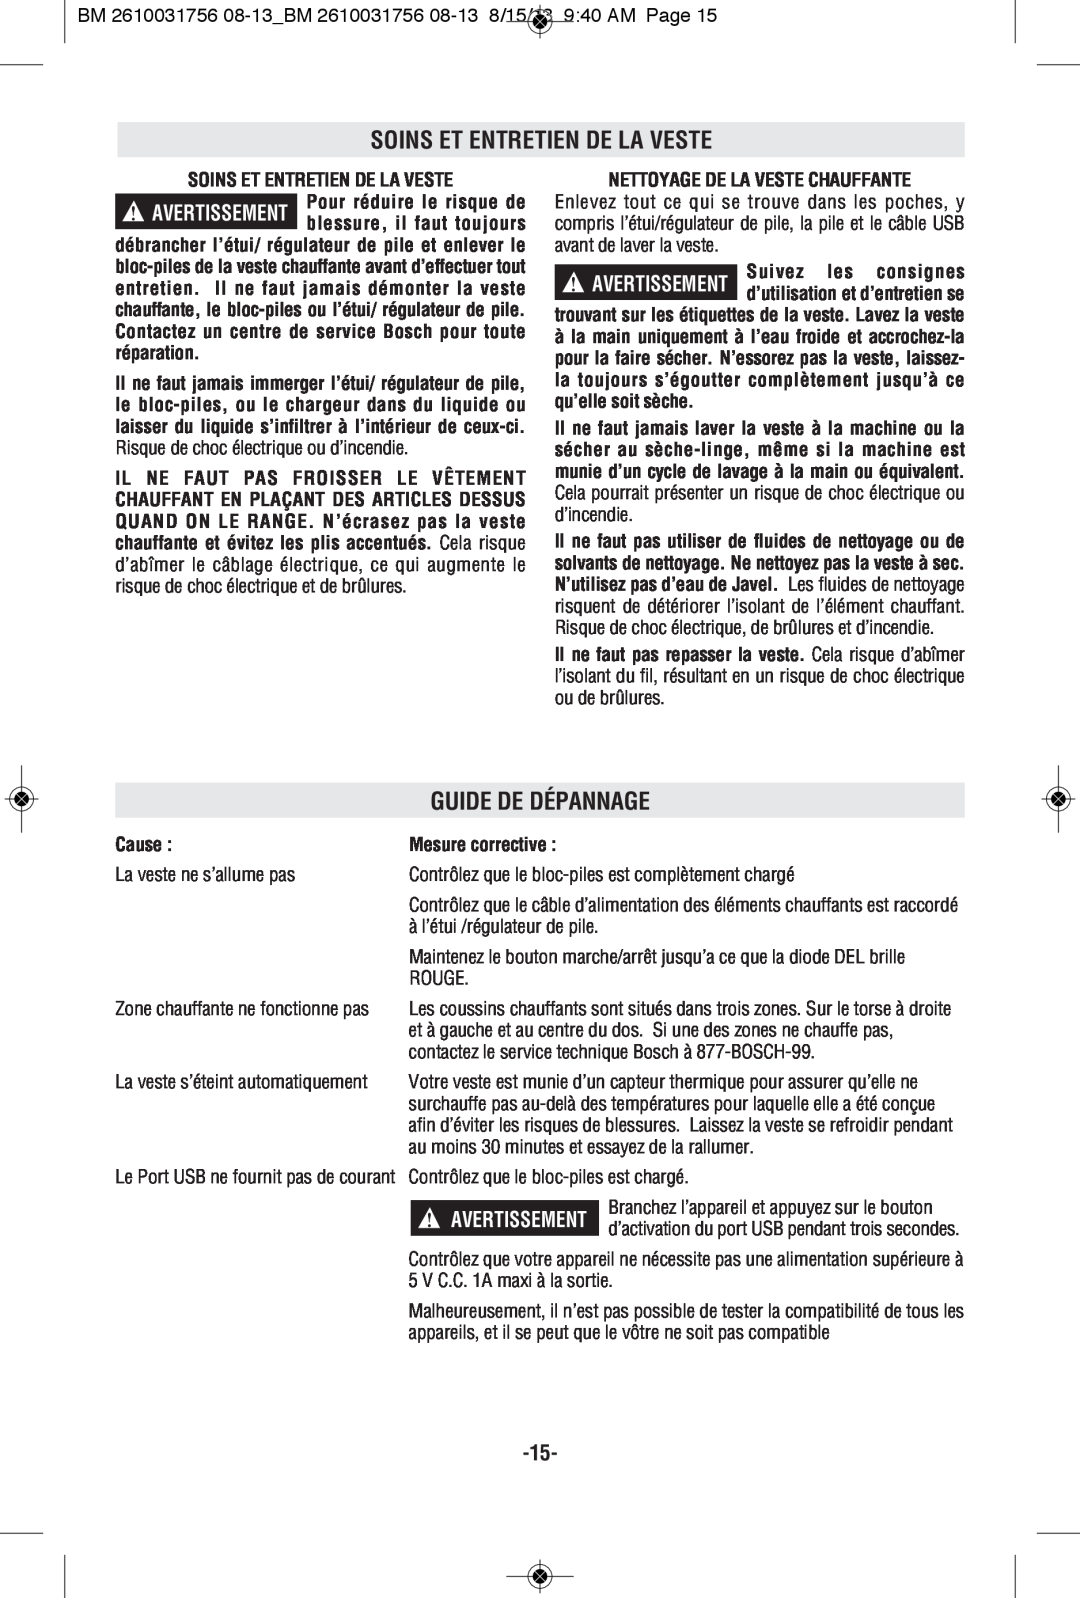 Bosch Appliances PSJ120S manual Soins Et Entretien De La Veste, Guide De Dépannage, Nettoyage De La Veste Chauffante, Cause 